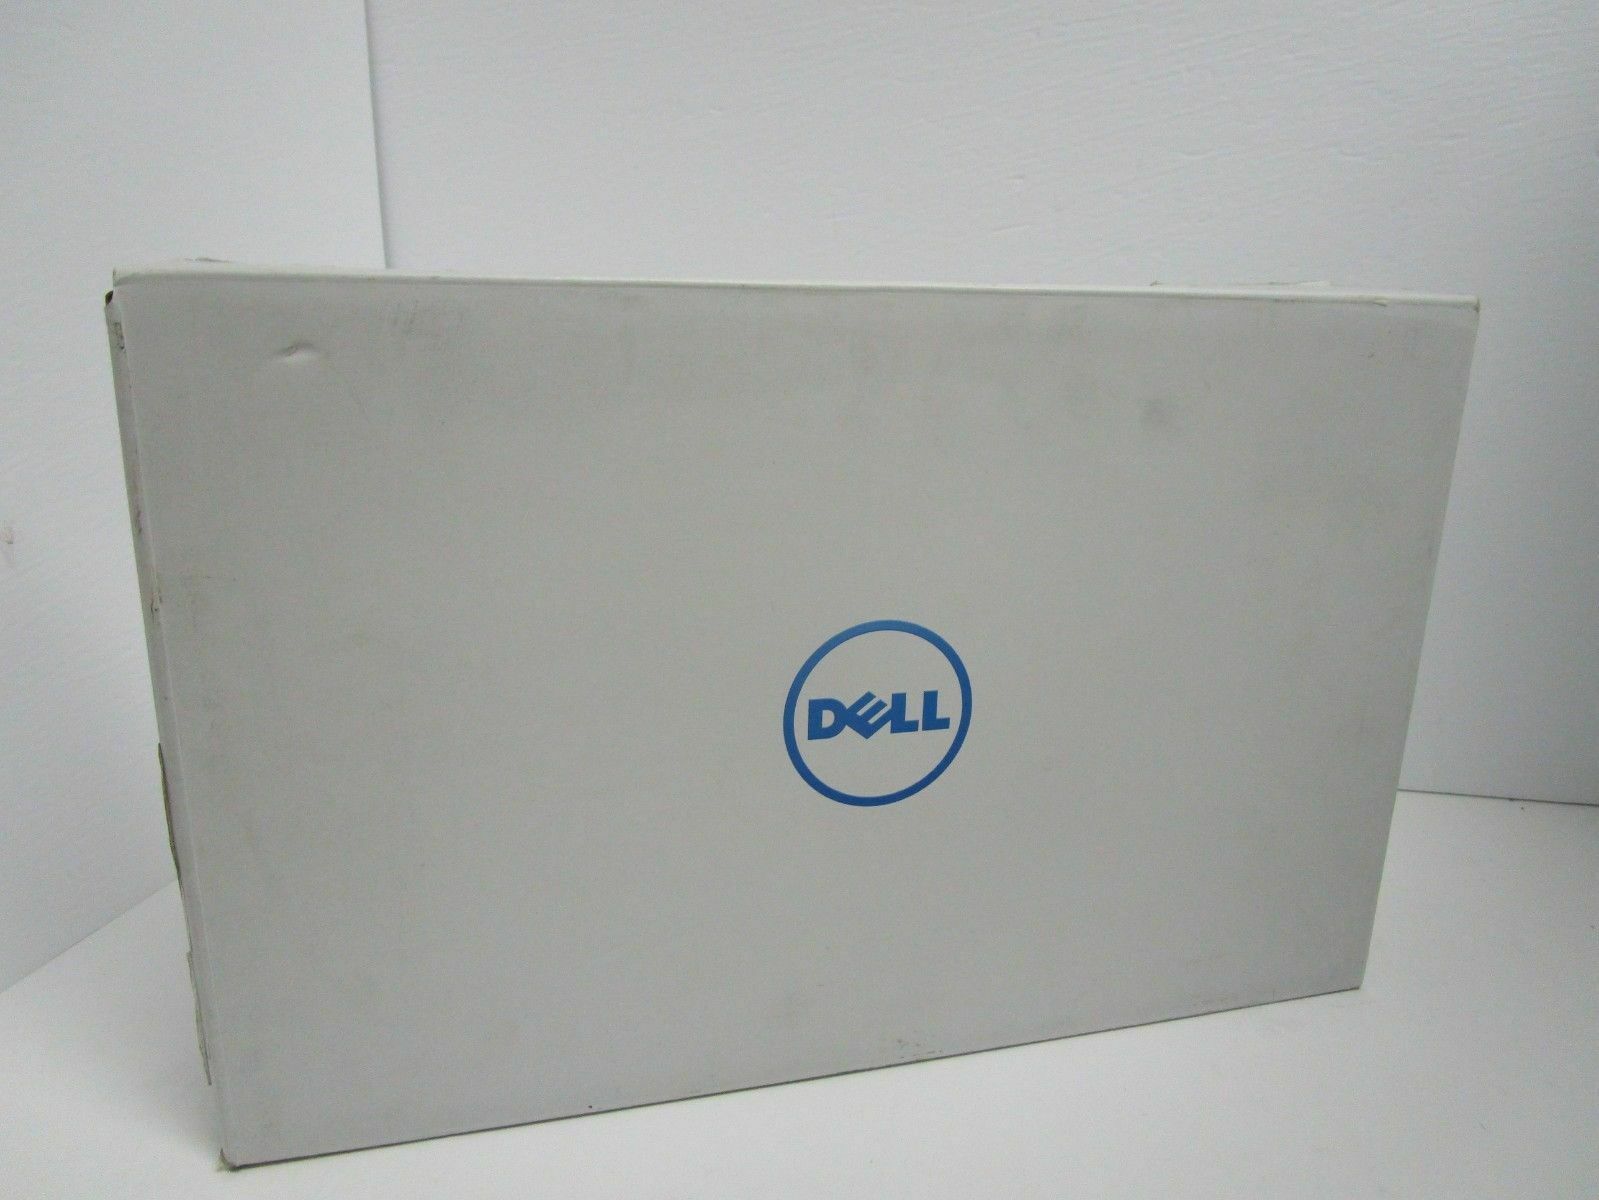 Dell Inspiron i5570-5279SLV 15.6" Touch Laptop / Intel i5-8250U 8GB RAM 1TB HDD